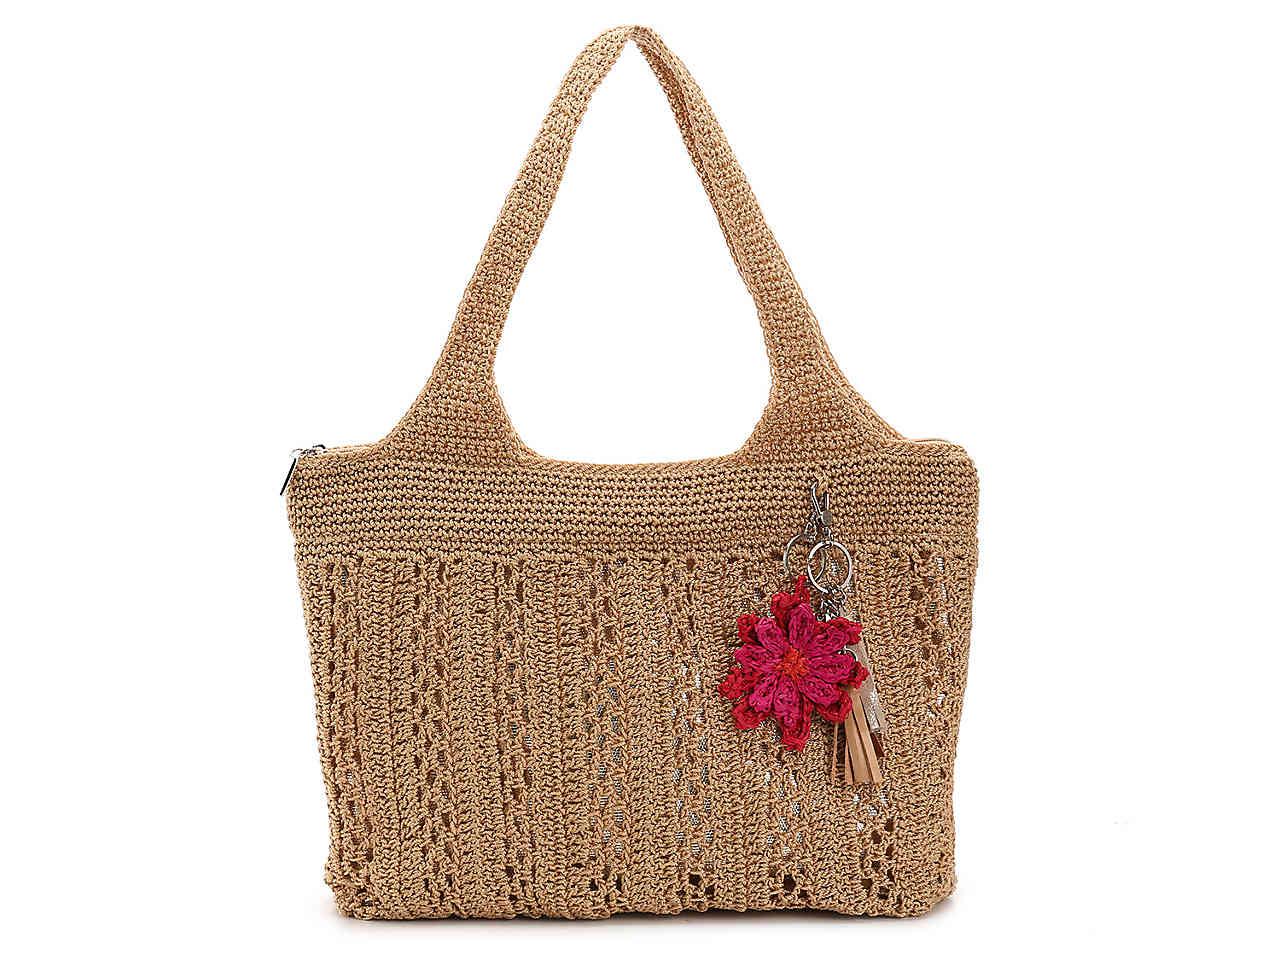 The Sak Crochet Shoulder Bag in Beige/Gold Metallic (Metallic) - Lyst